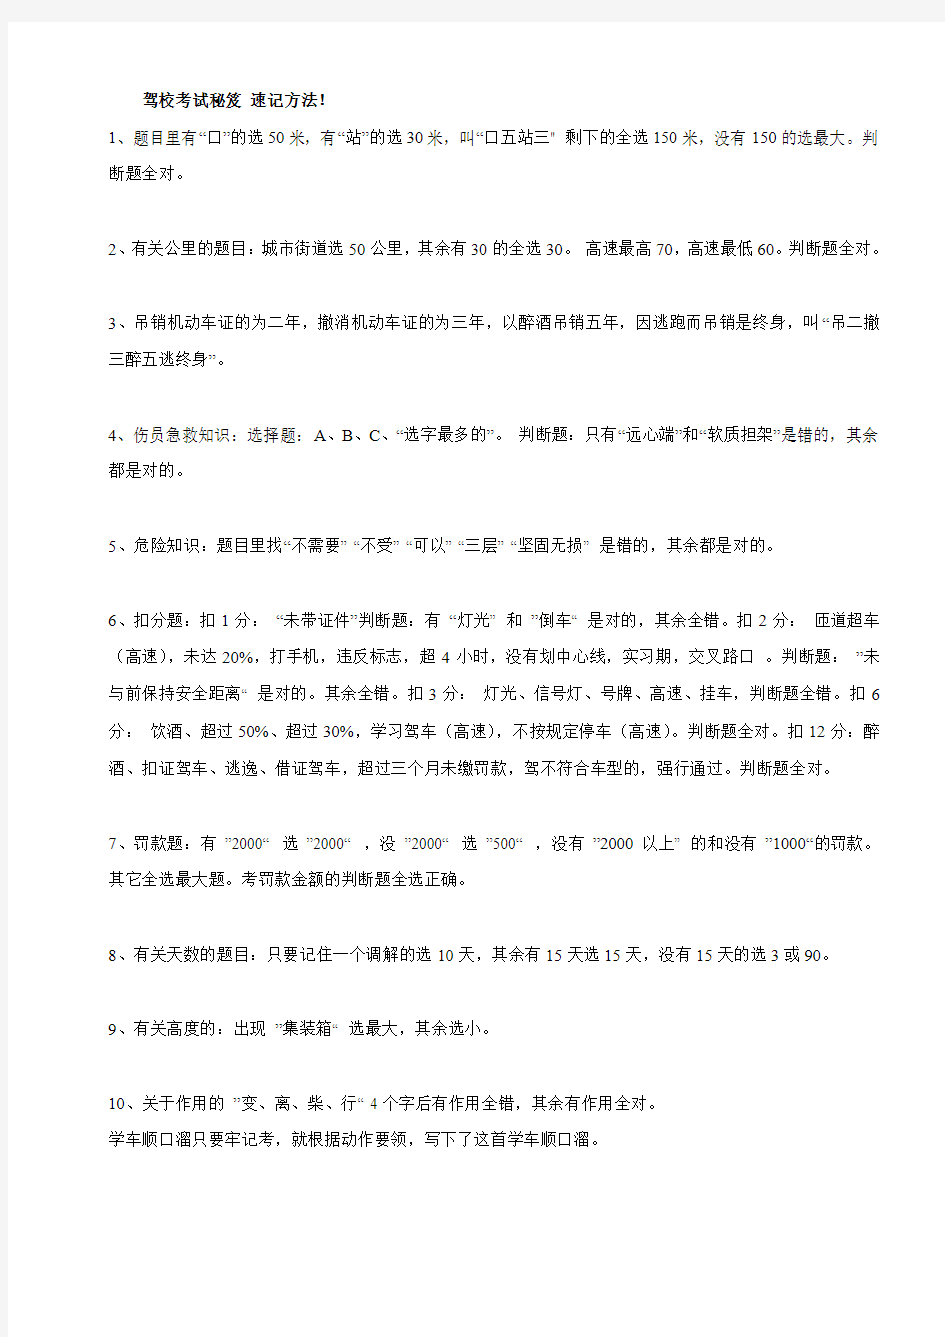 上海驾照考试总结——zzb